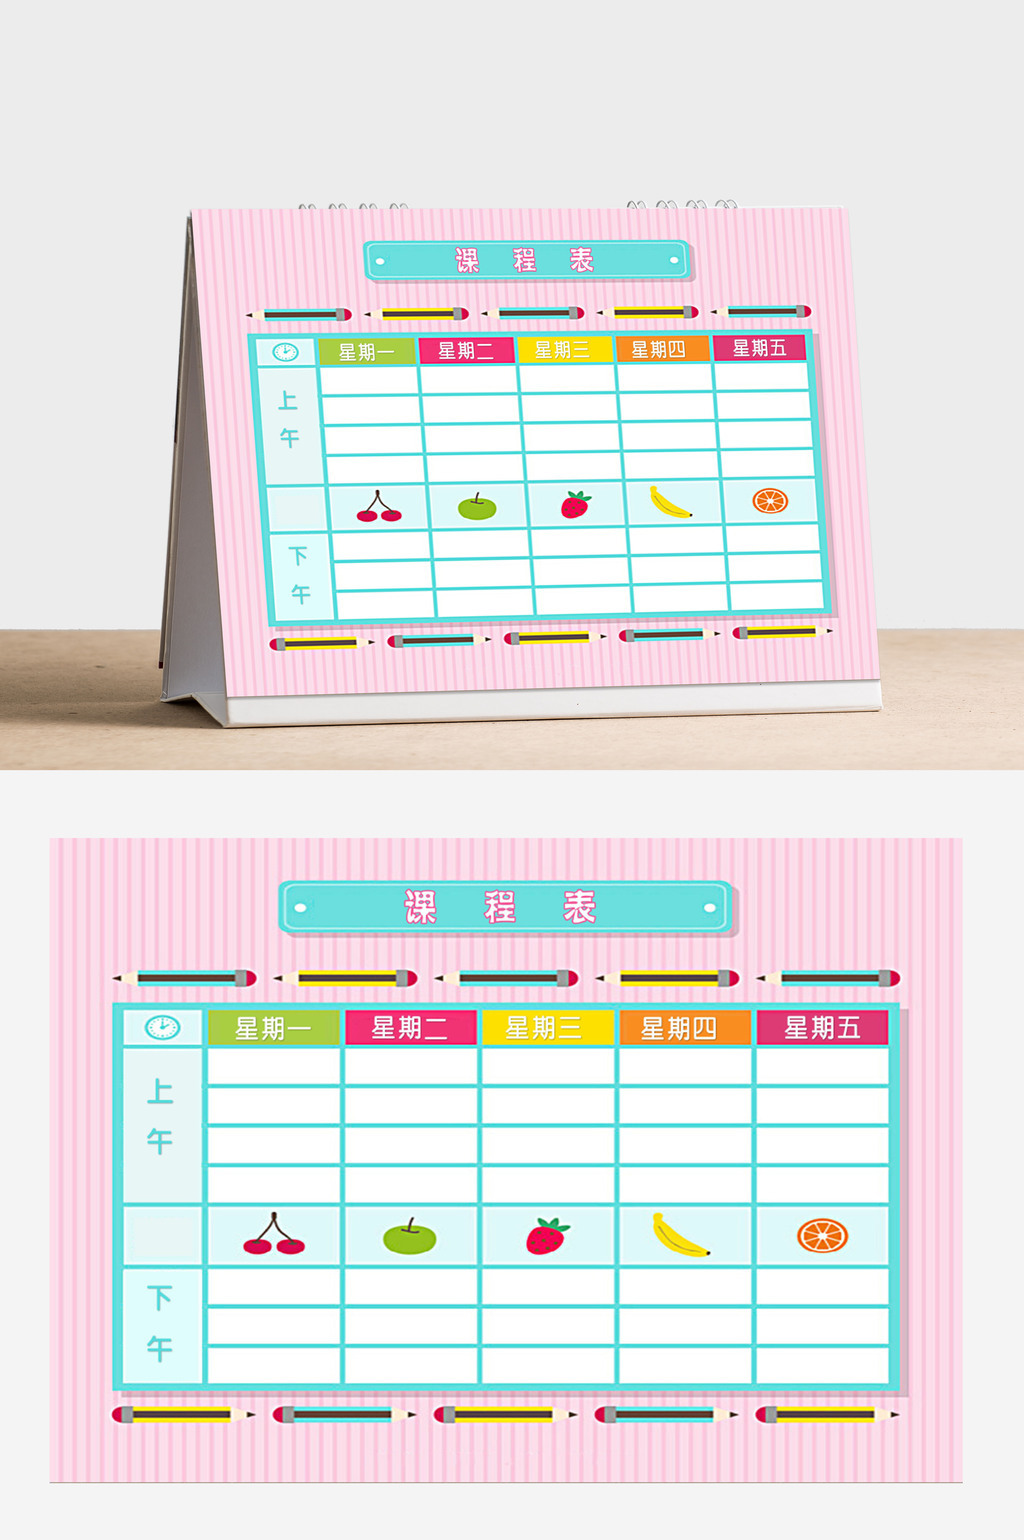 包图网提供精美好看的粉色水果风格小学生课程表word模板素材免费下载